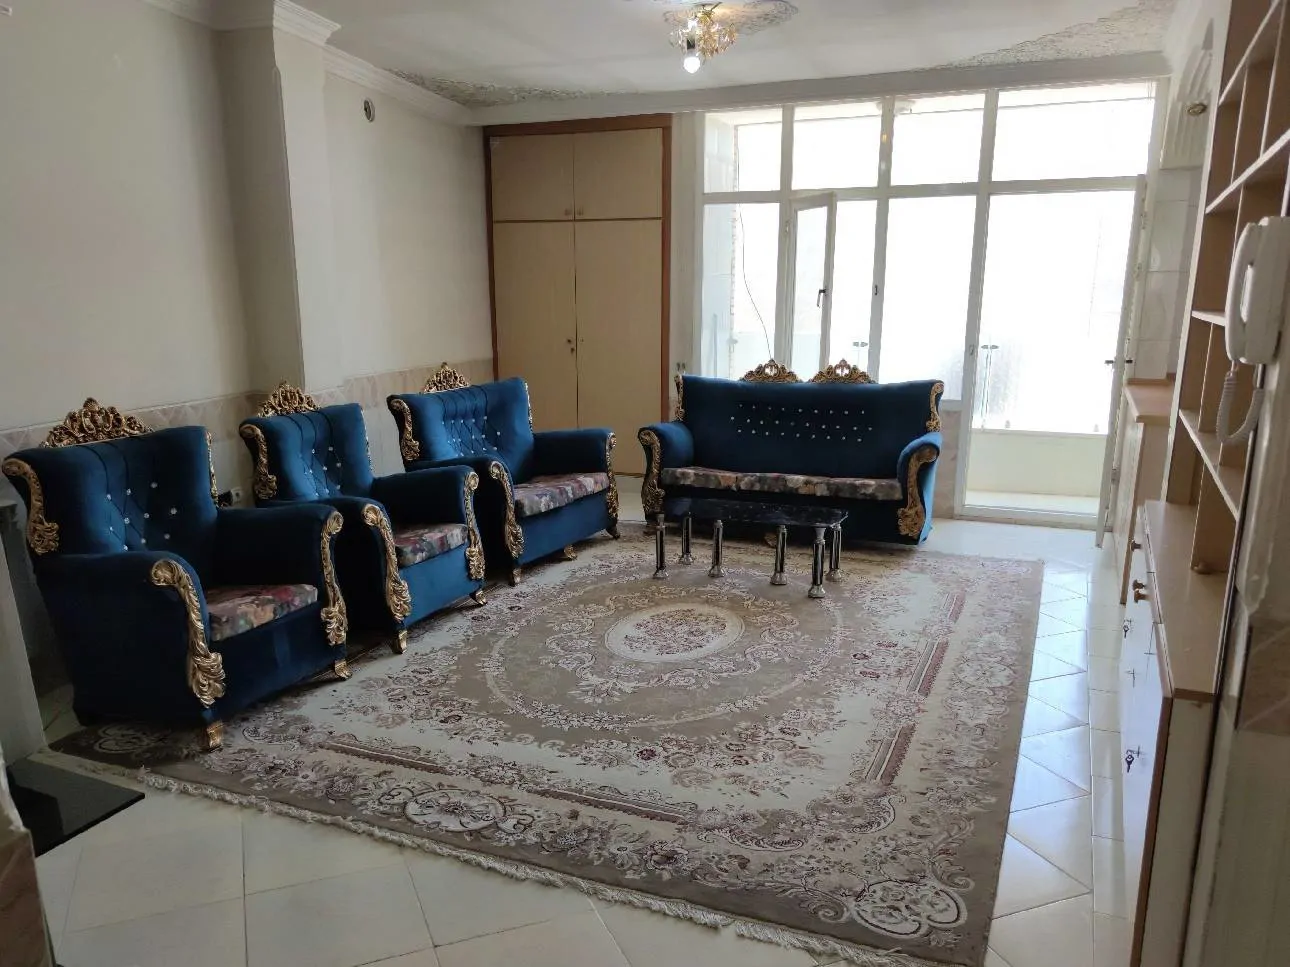 آپارتمان کوروش کبیر (3)،2 خوابه در اصفهان - اجاره آپارتمان در اصفهان - اتاقک